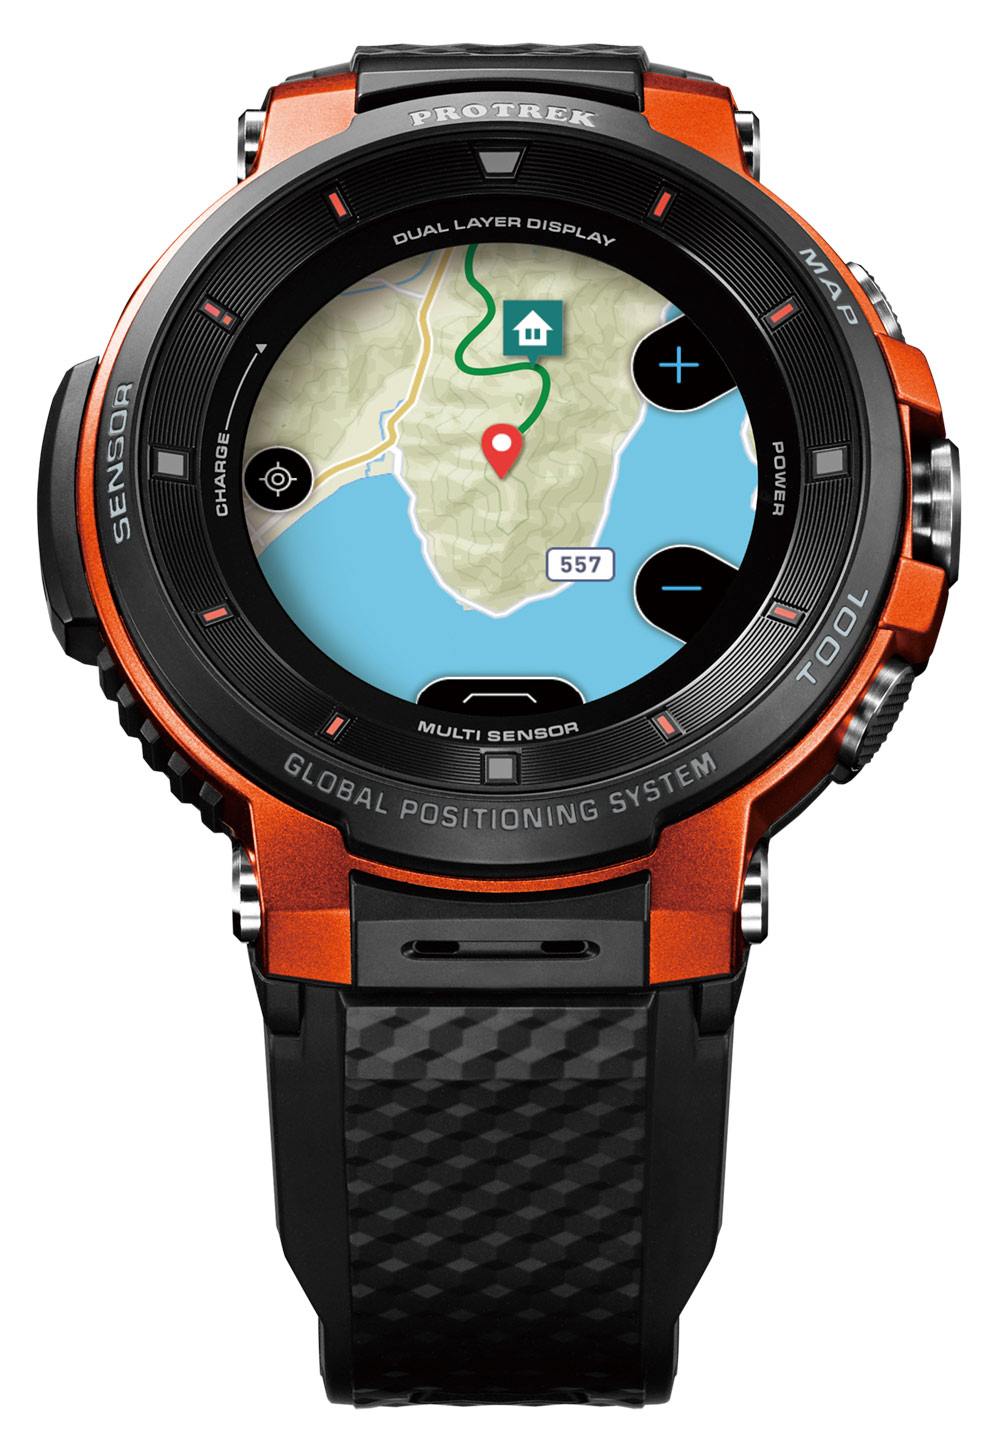 Casio Protrek Smart WSD-F30 Watch Now Has More Wearable Size ...